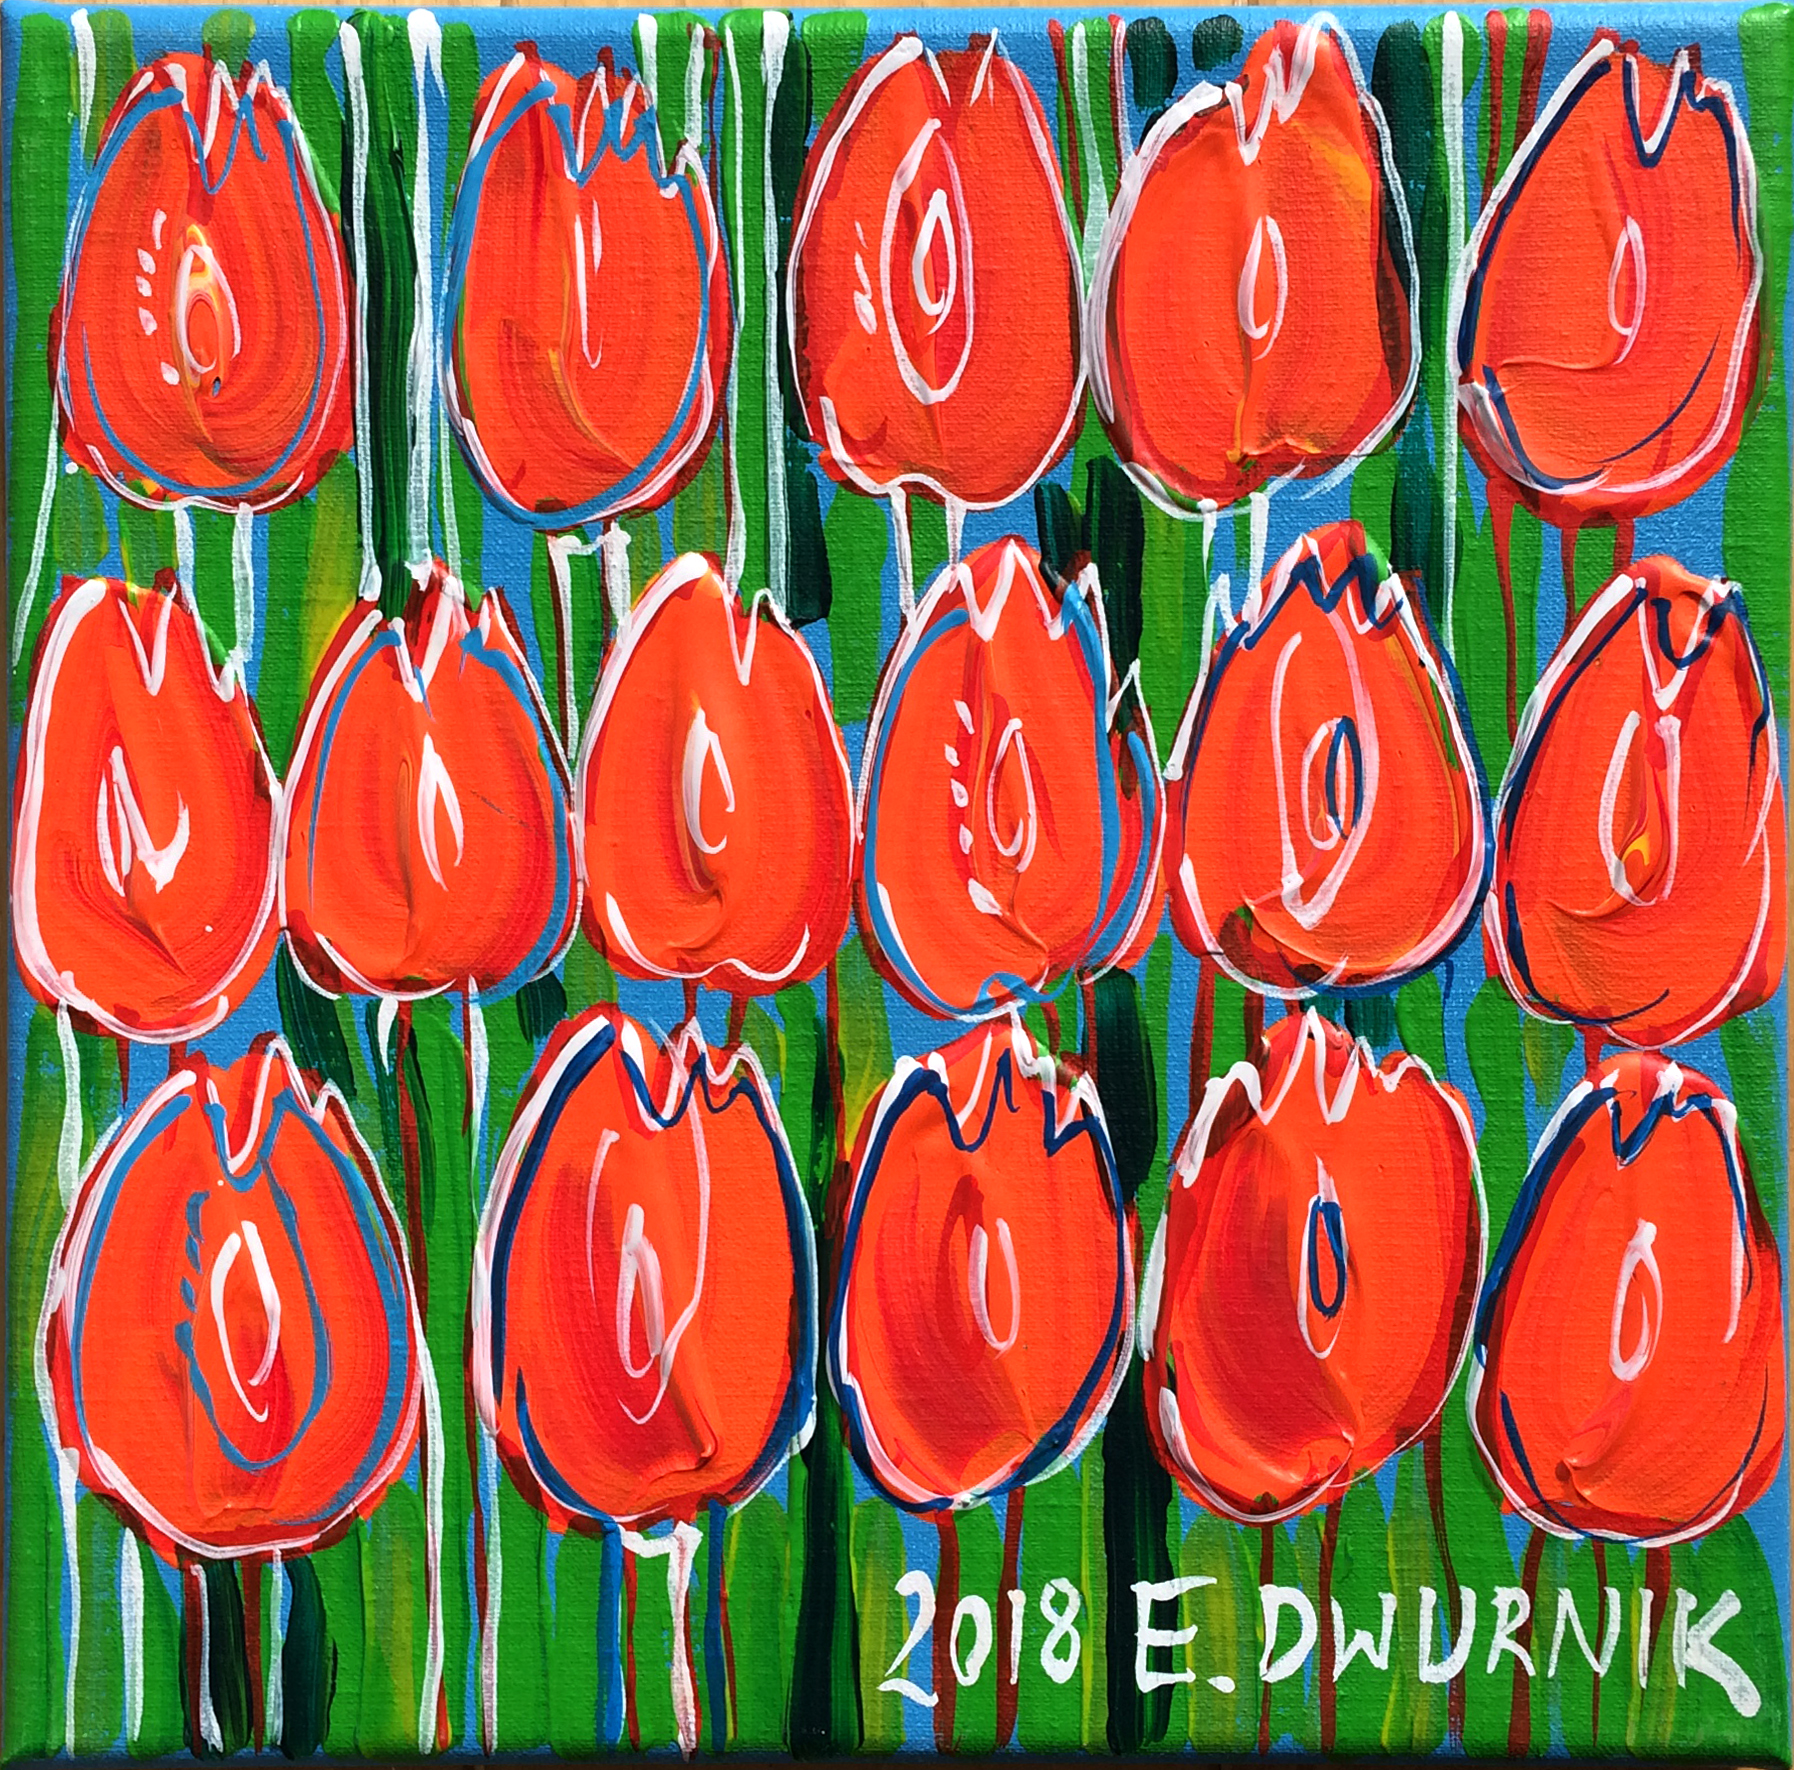 Czerwone tulipany